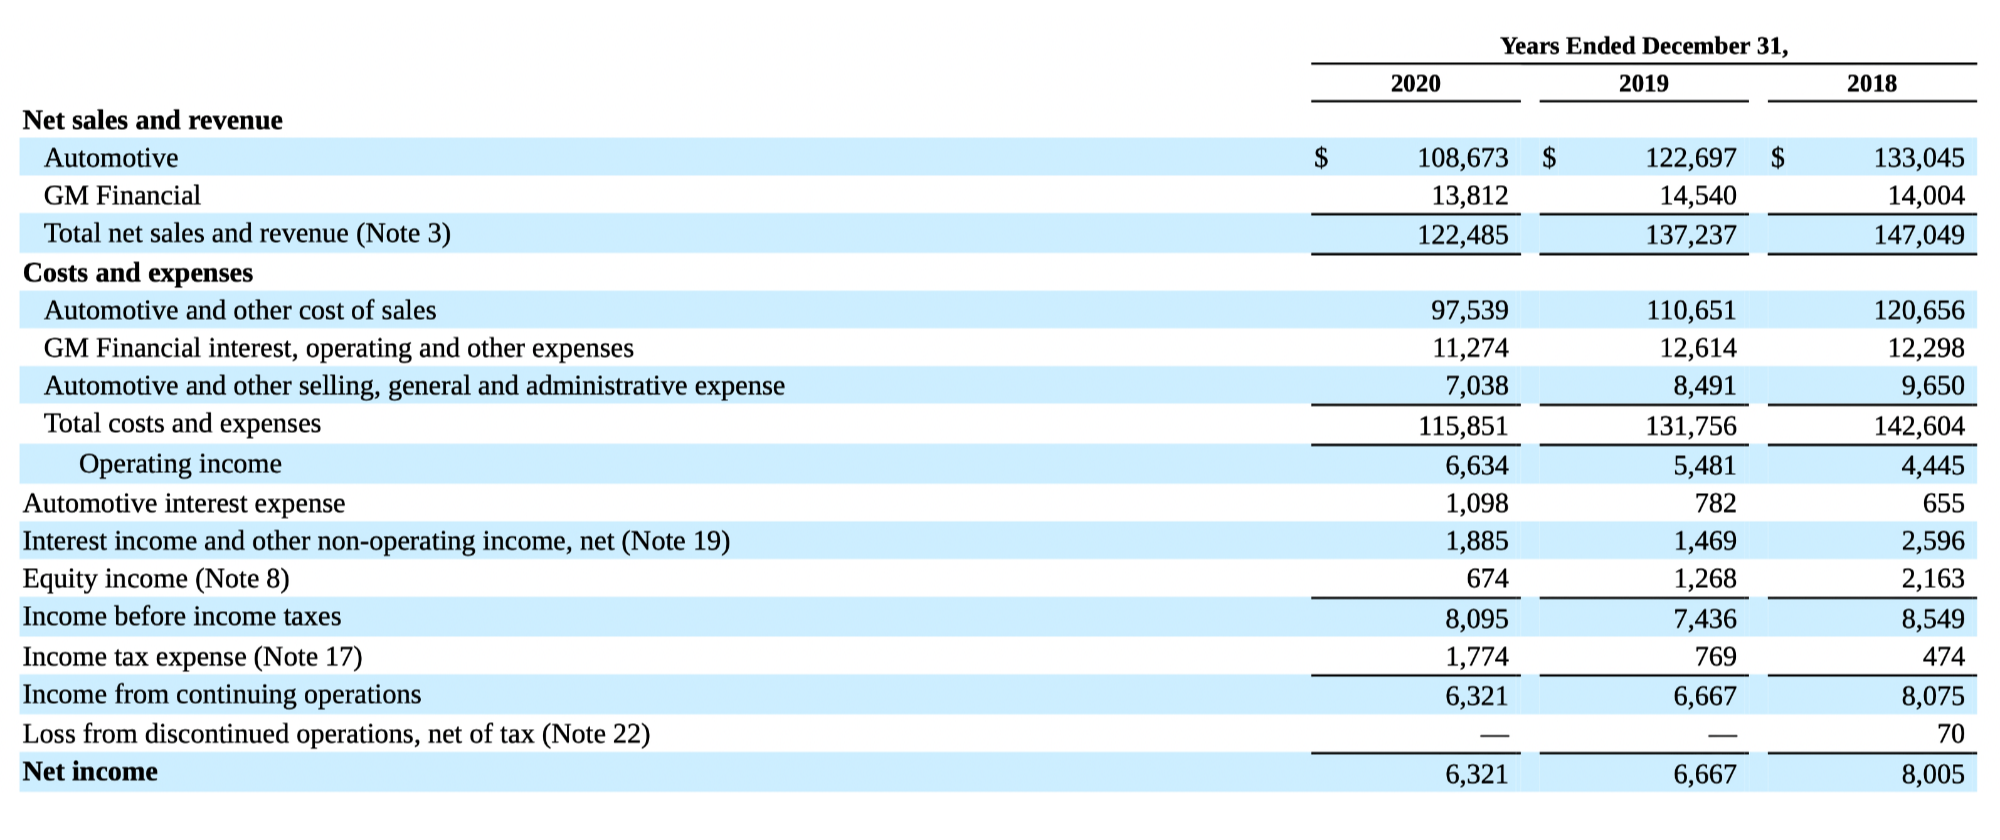 Финансовые показатели компании по сегментам в млн долларов. Источник: годовой отчет компании, стр. 51 (54)